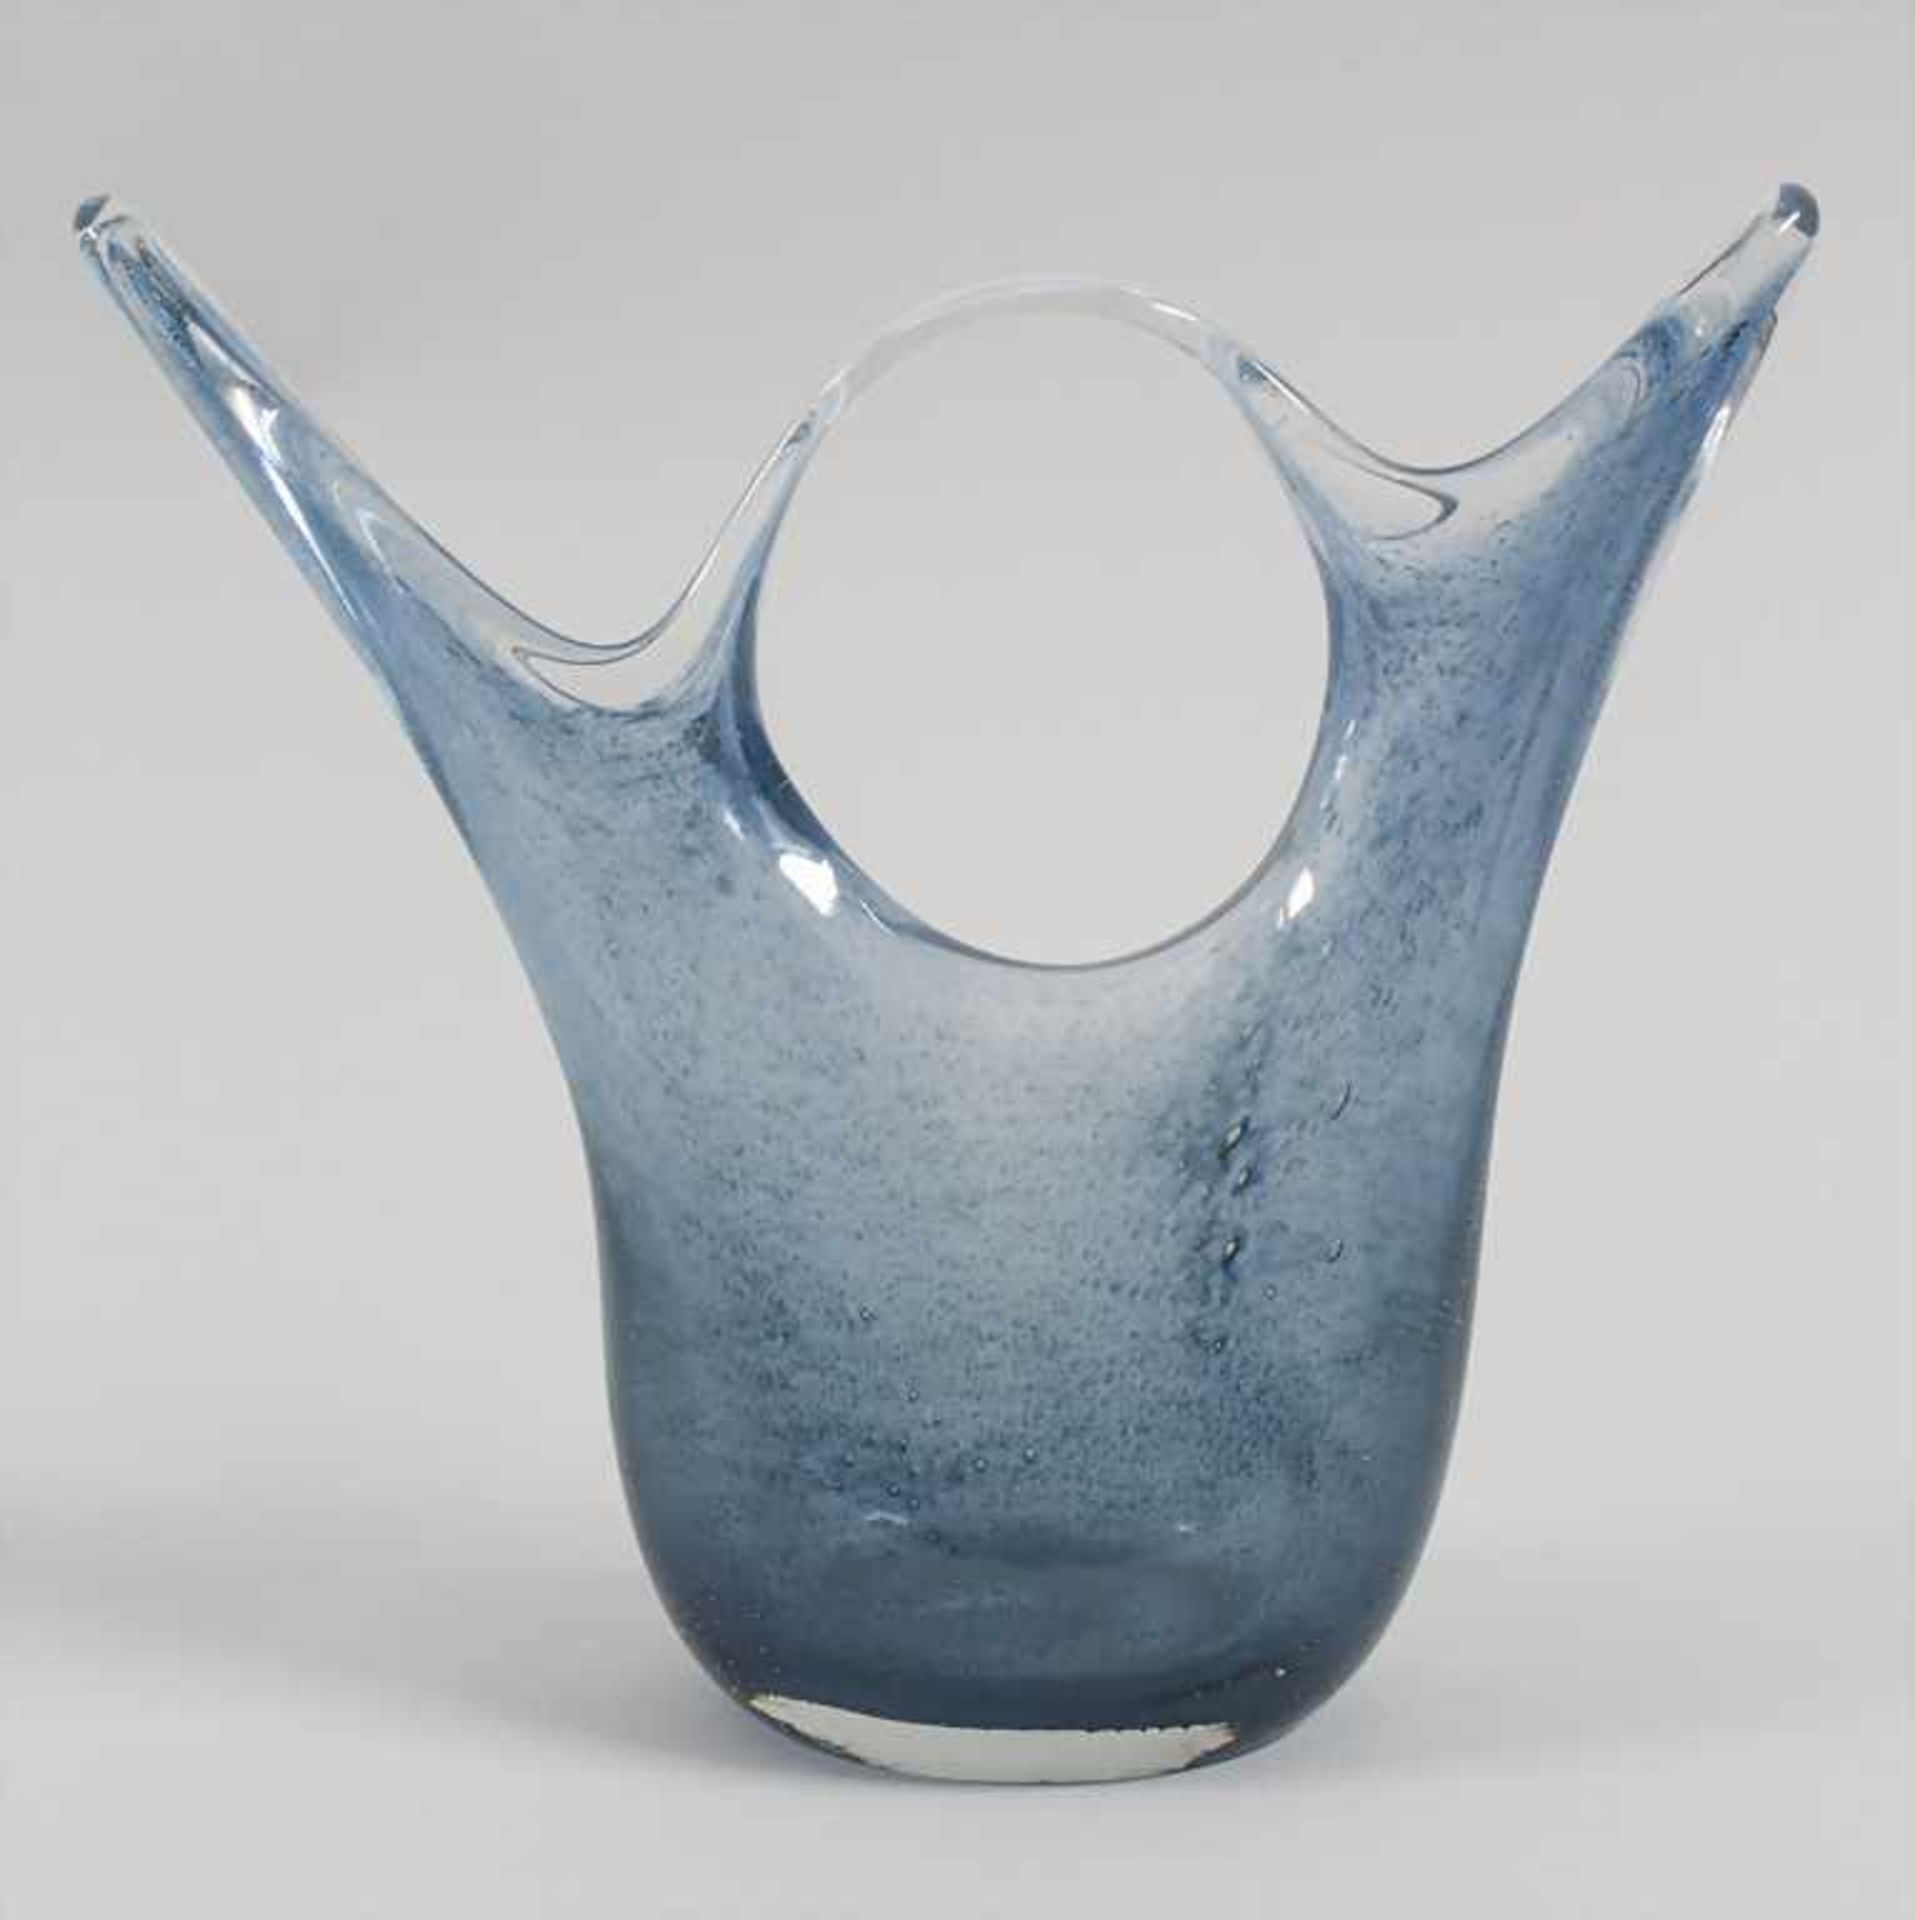 Glasziervase 'Cobalto' / A decorative vase 'Cobalto', Barovier & Toso, Entw. Ercole Barovier, - Image 3 of 7